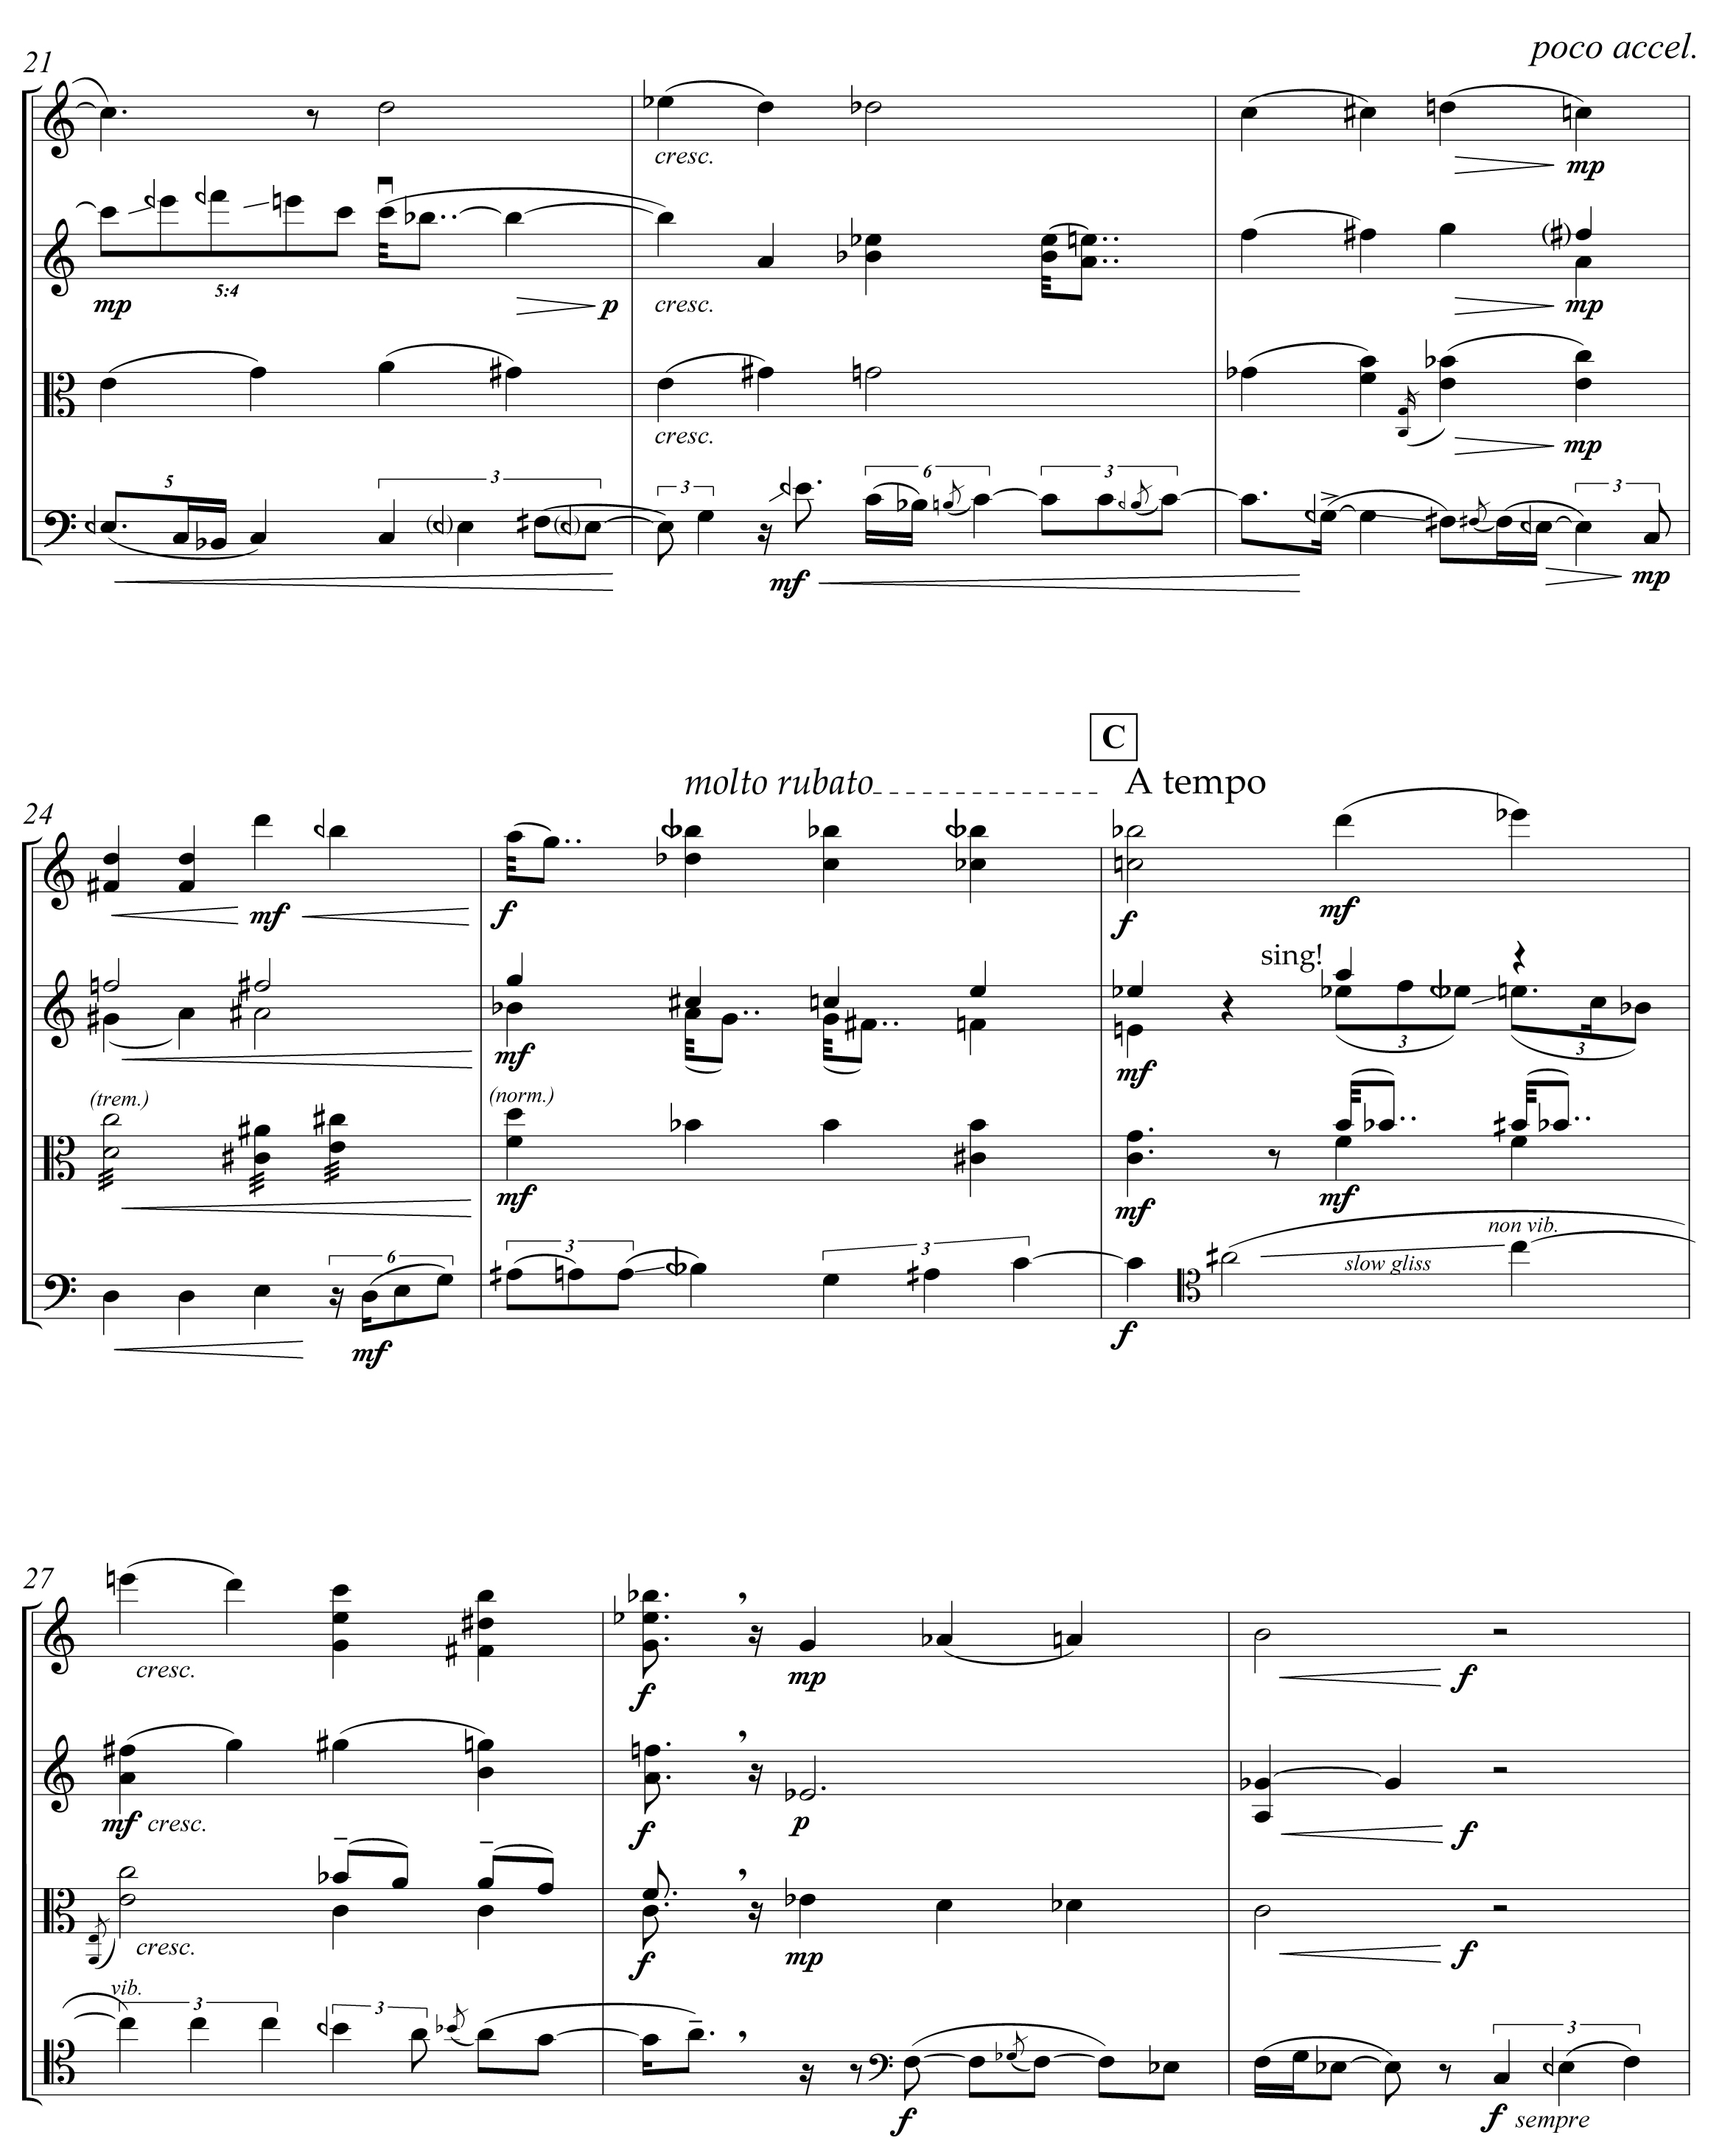 Bermel: String Quartet, page 5